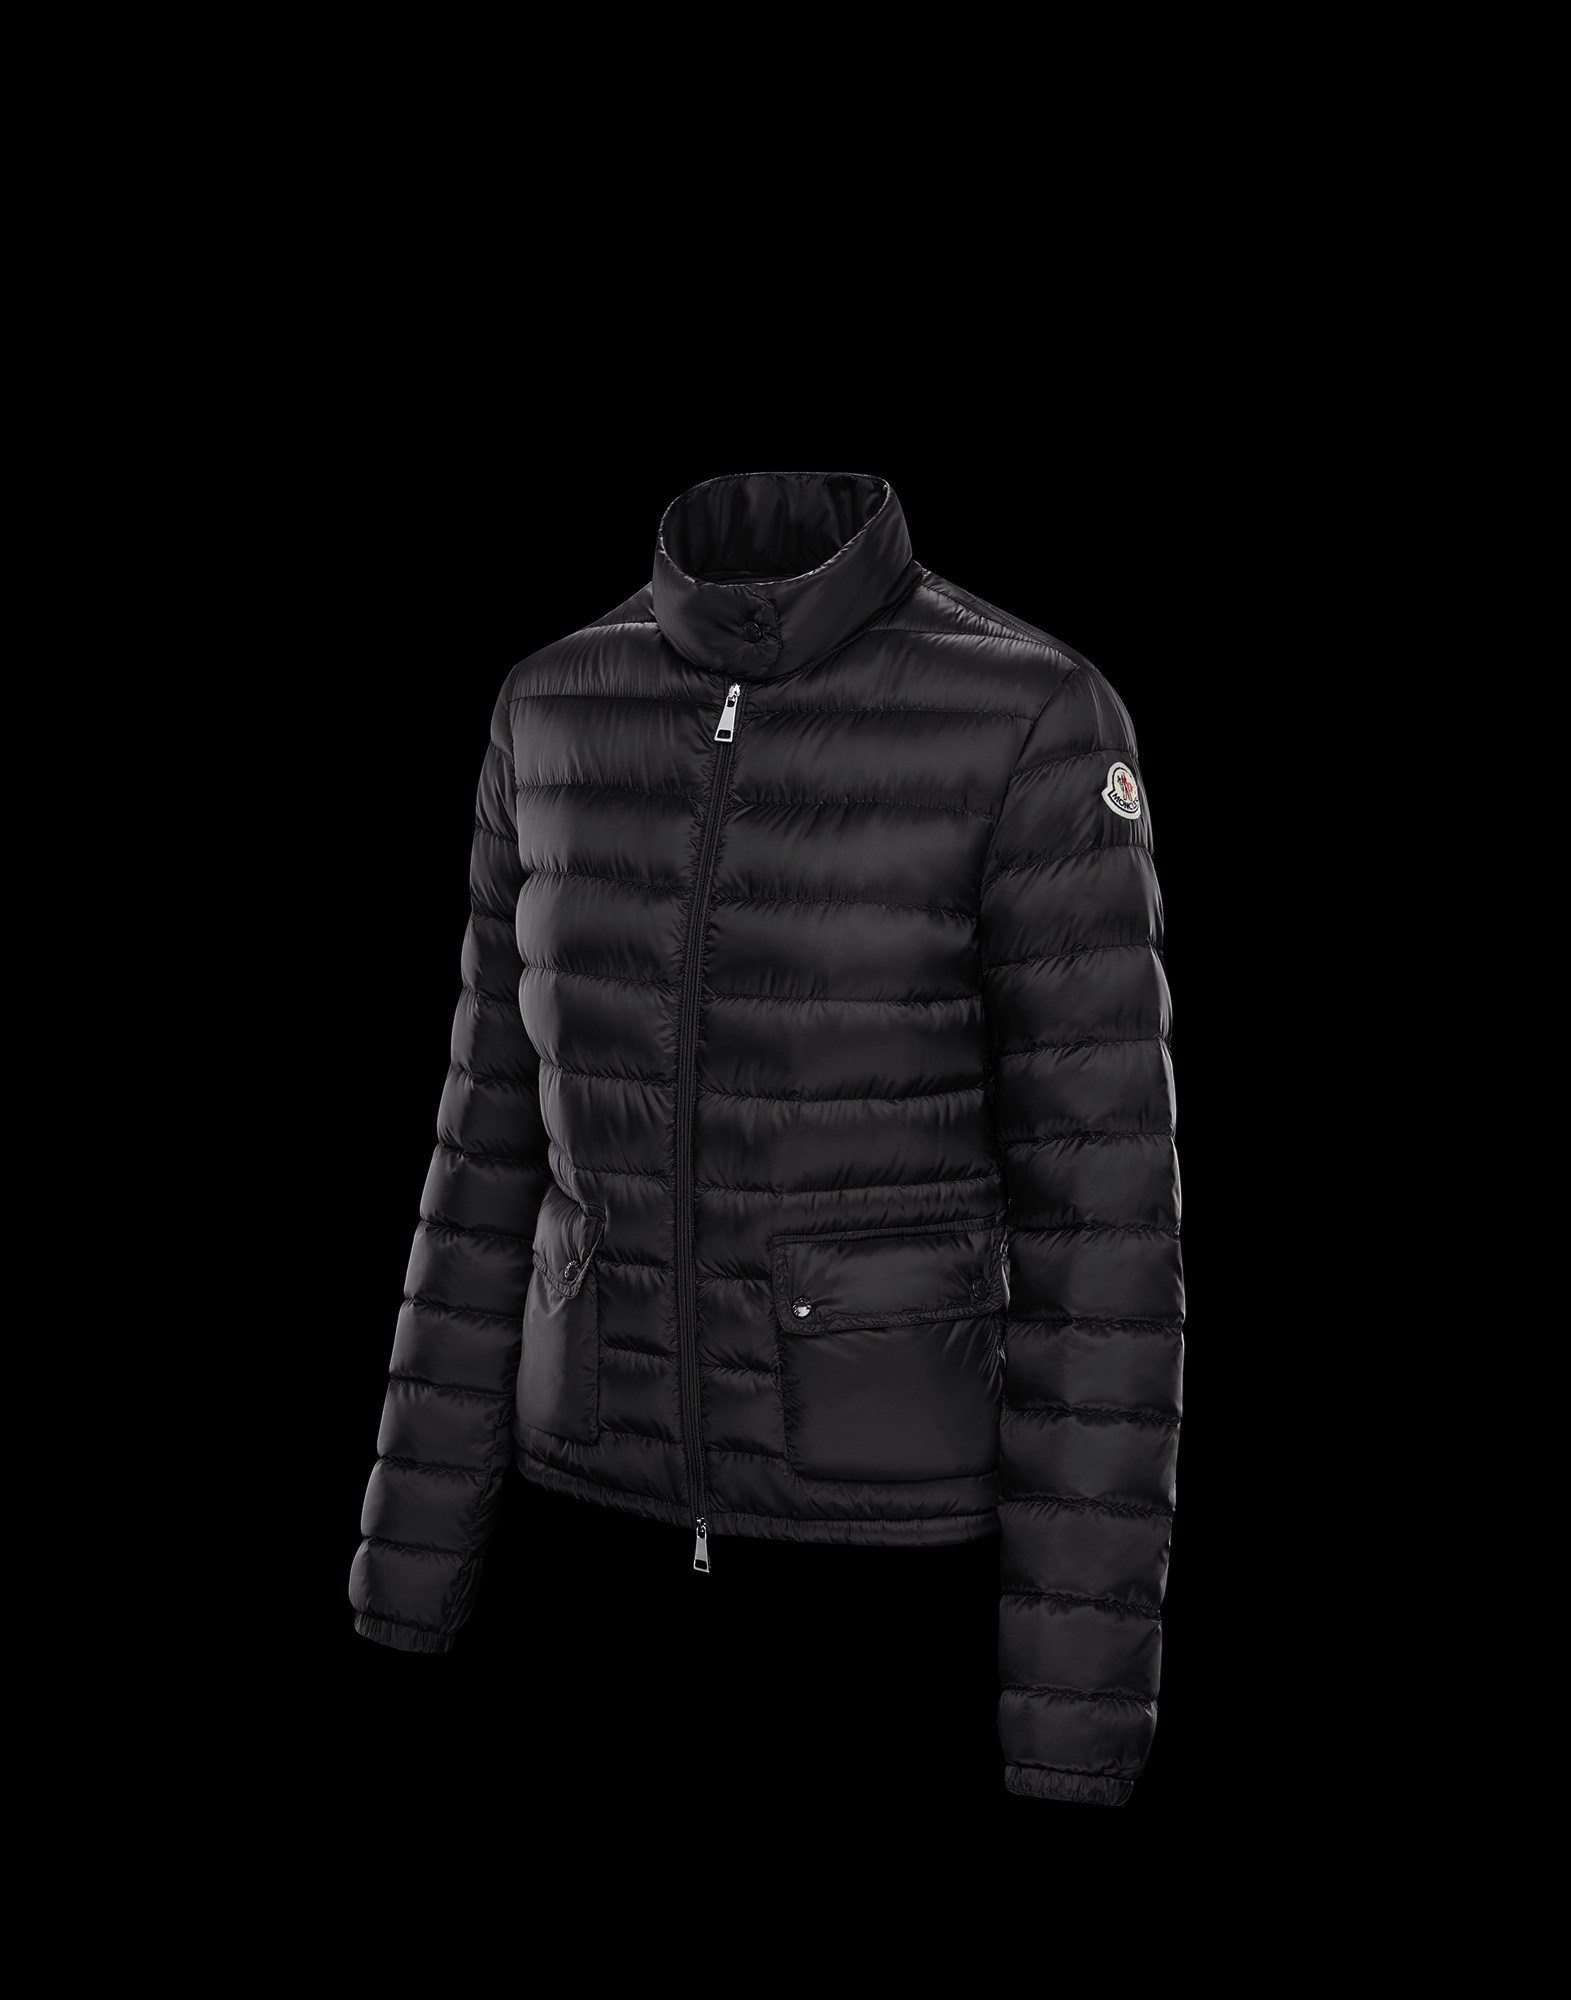 lans moncler jacket